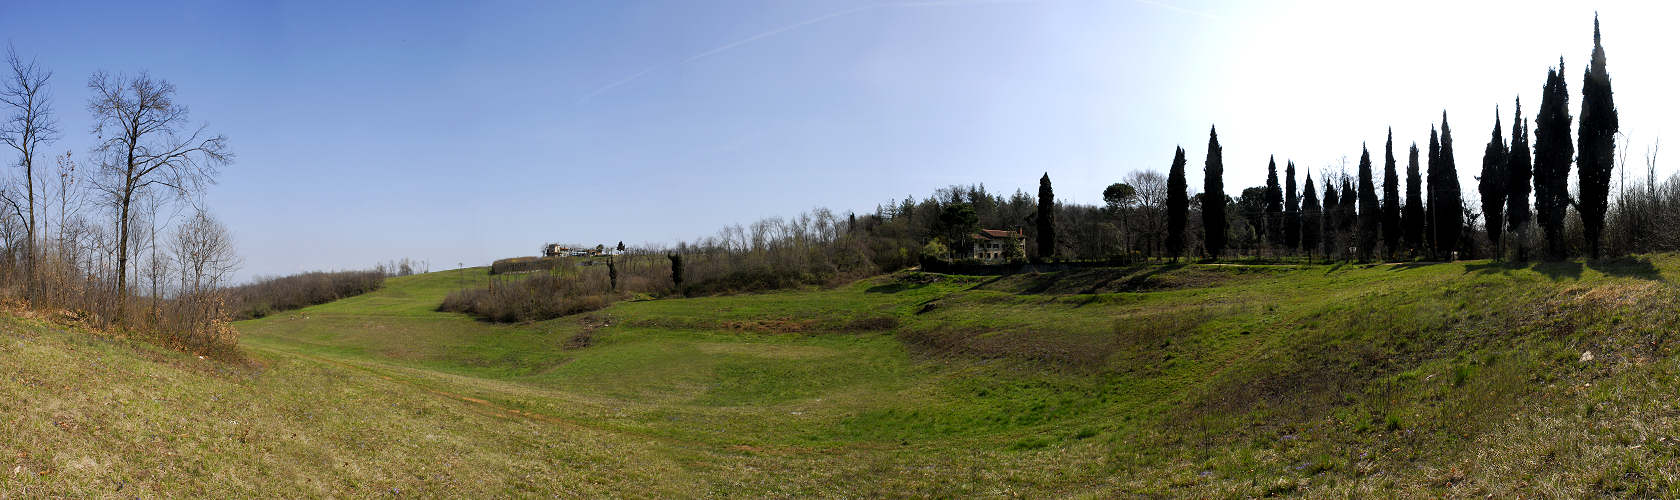 Monte Comunale di Brendola, Monti Berici, Vicenza